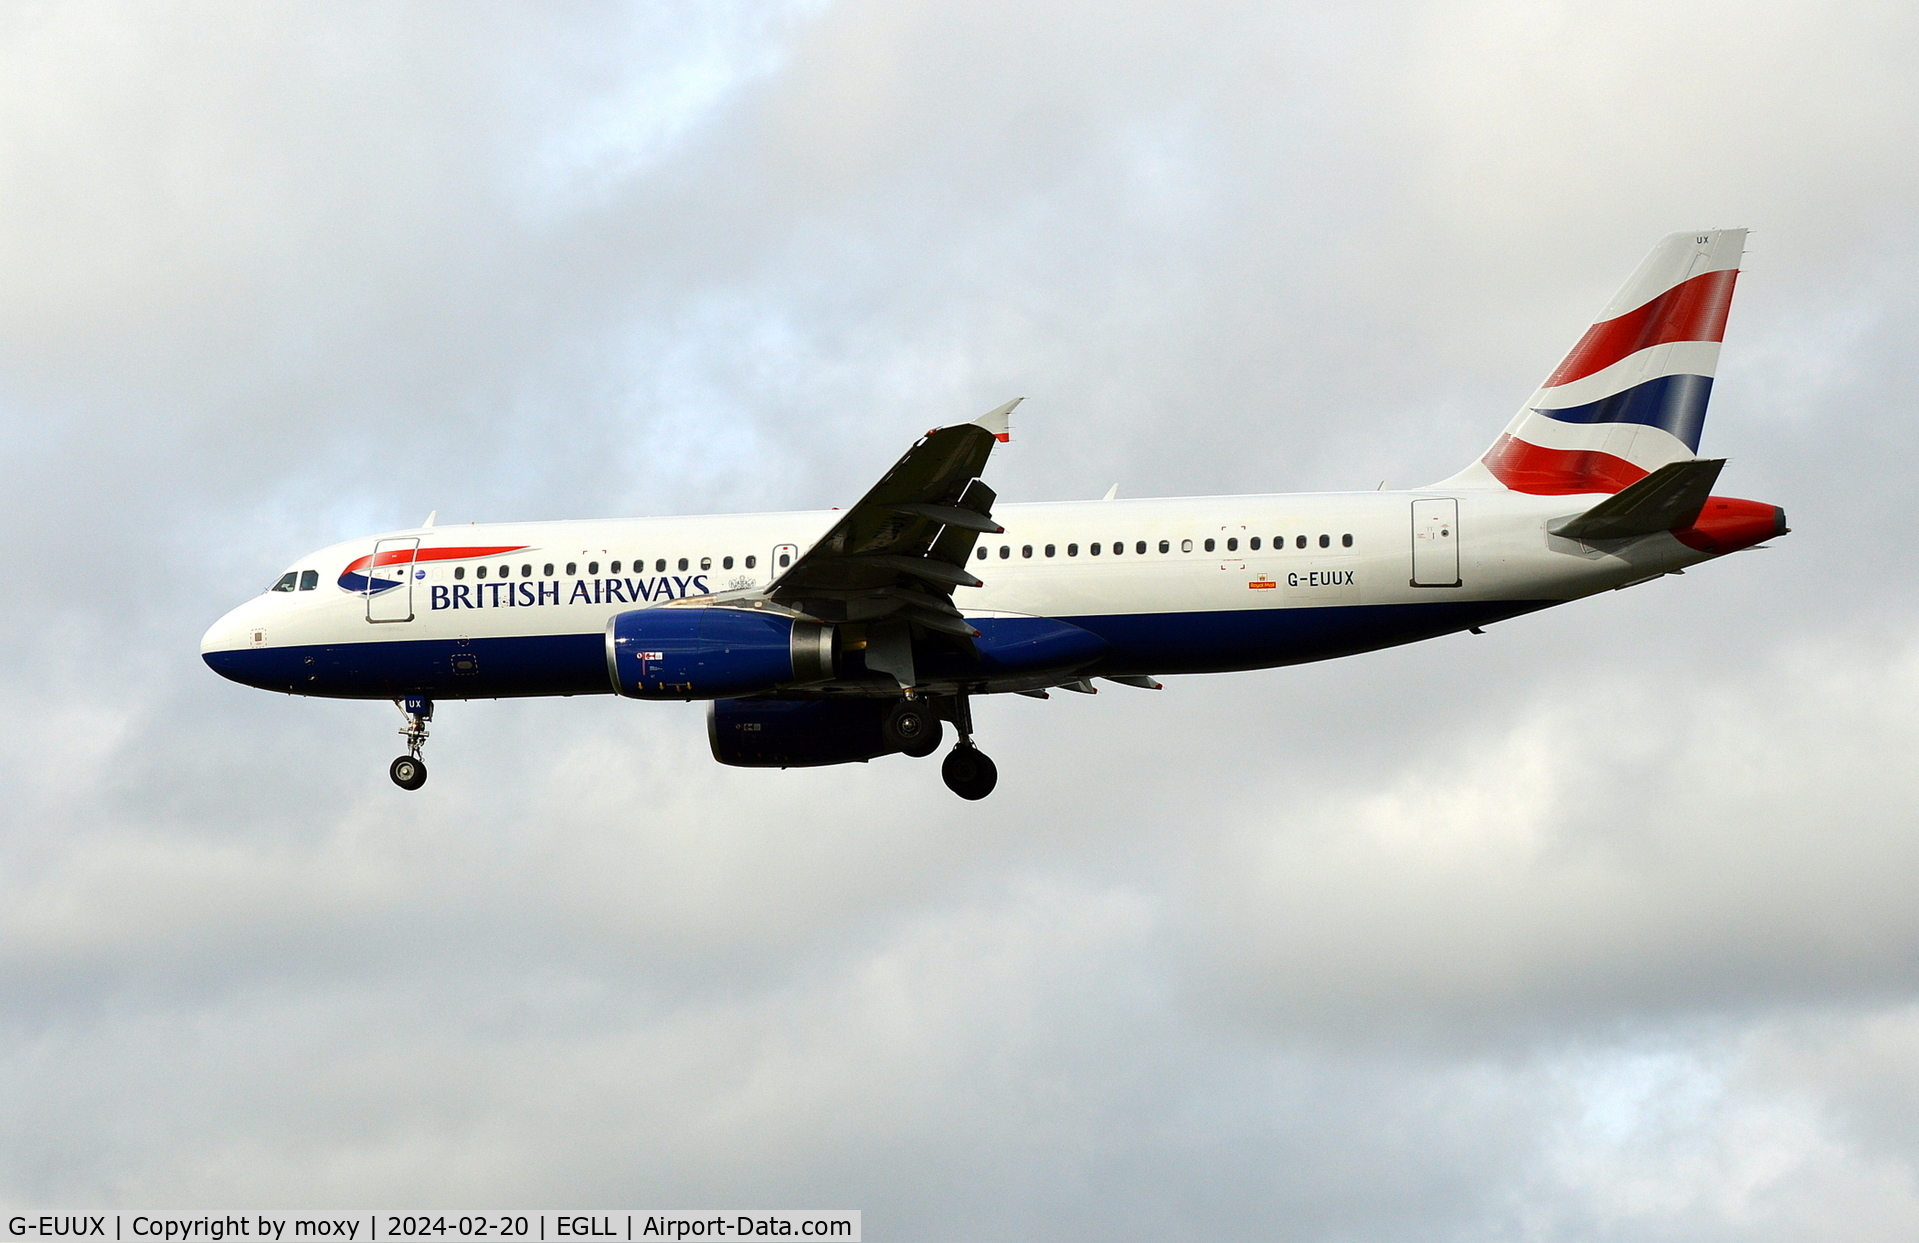 G-EUUX, 2008 Airbus A320-232 C/N 3550, Airbus A320-232 landing at London Heathrow.